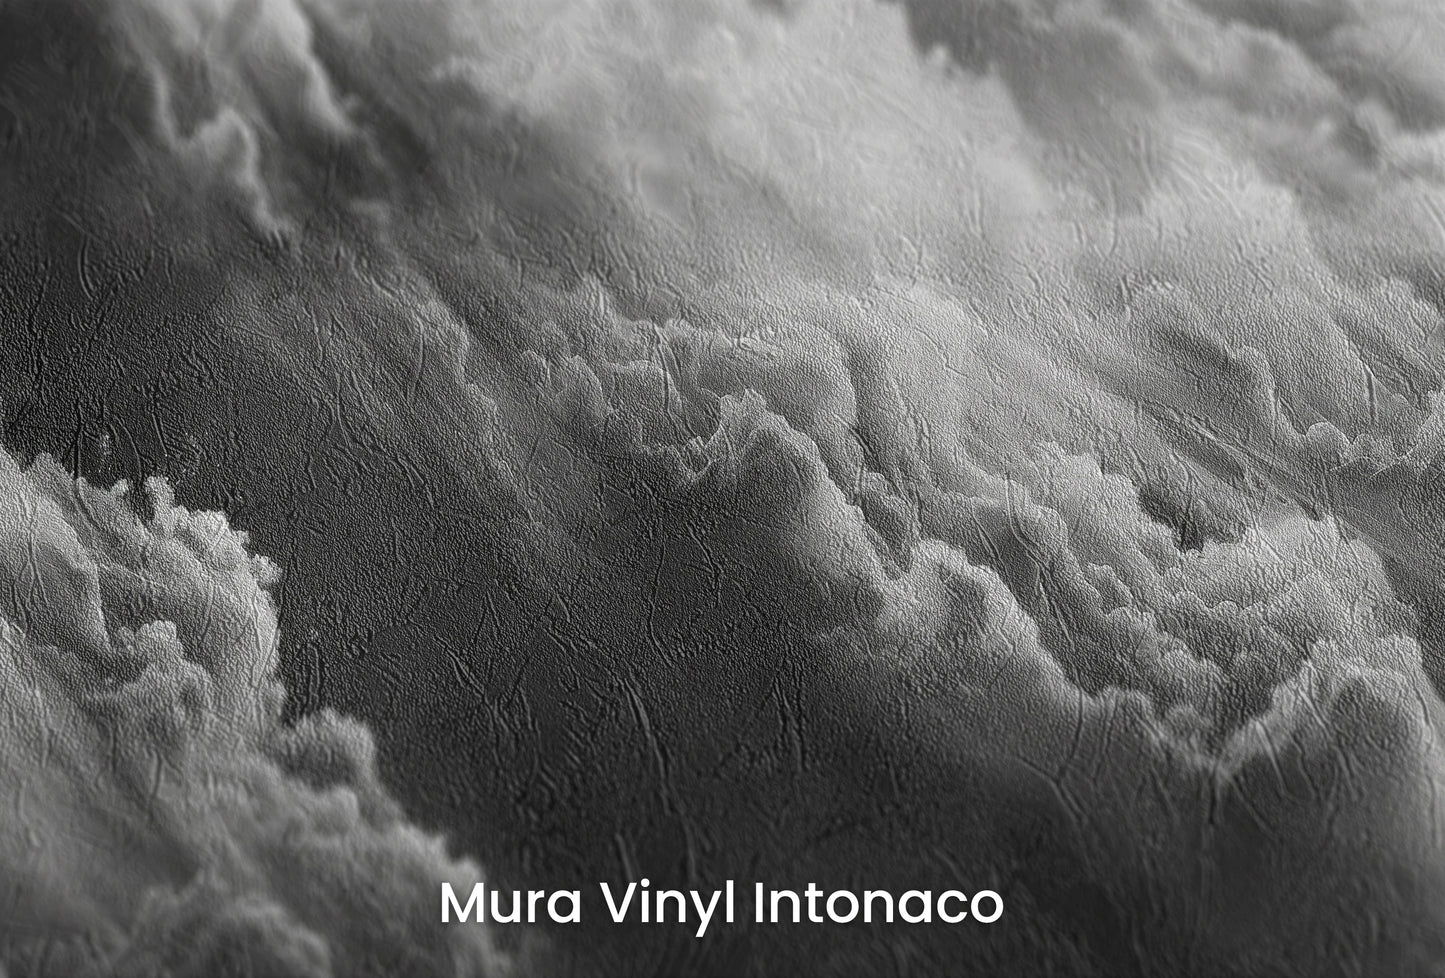 Zbliżenie na artystyczną fototapetę o nazwie Whispering Mists na podłożu Mura Vinyl Intonaco - struktura tartego tynku.